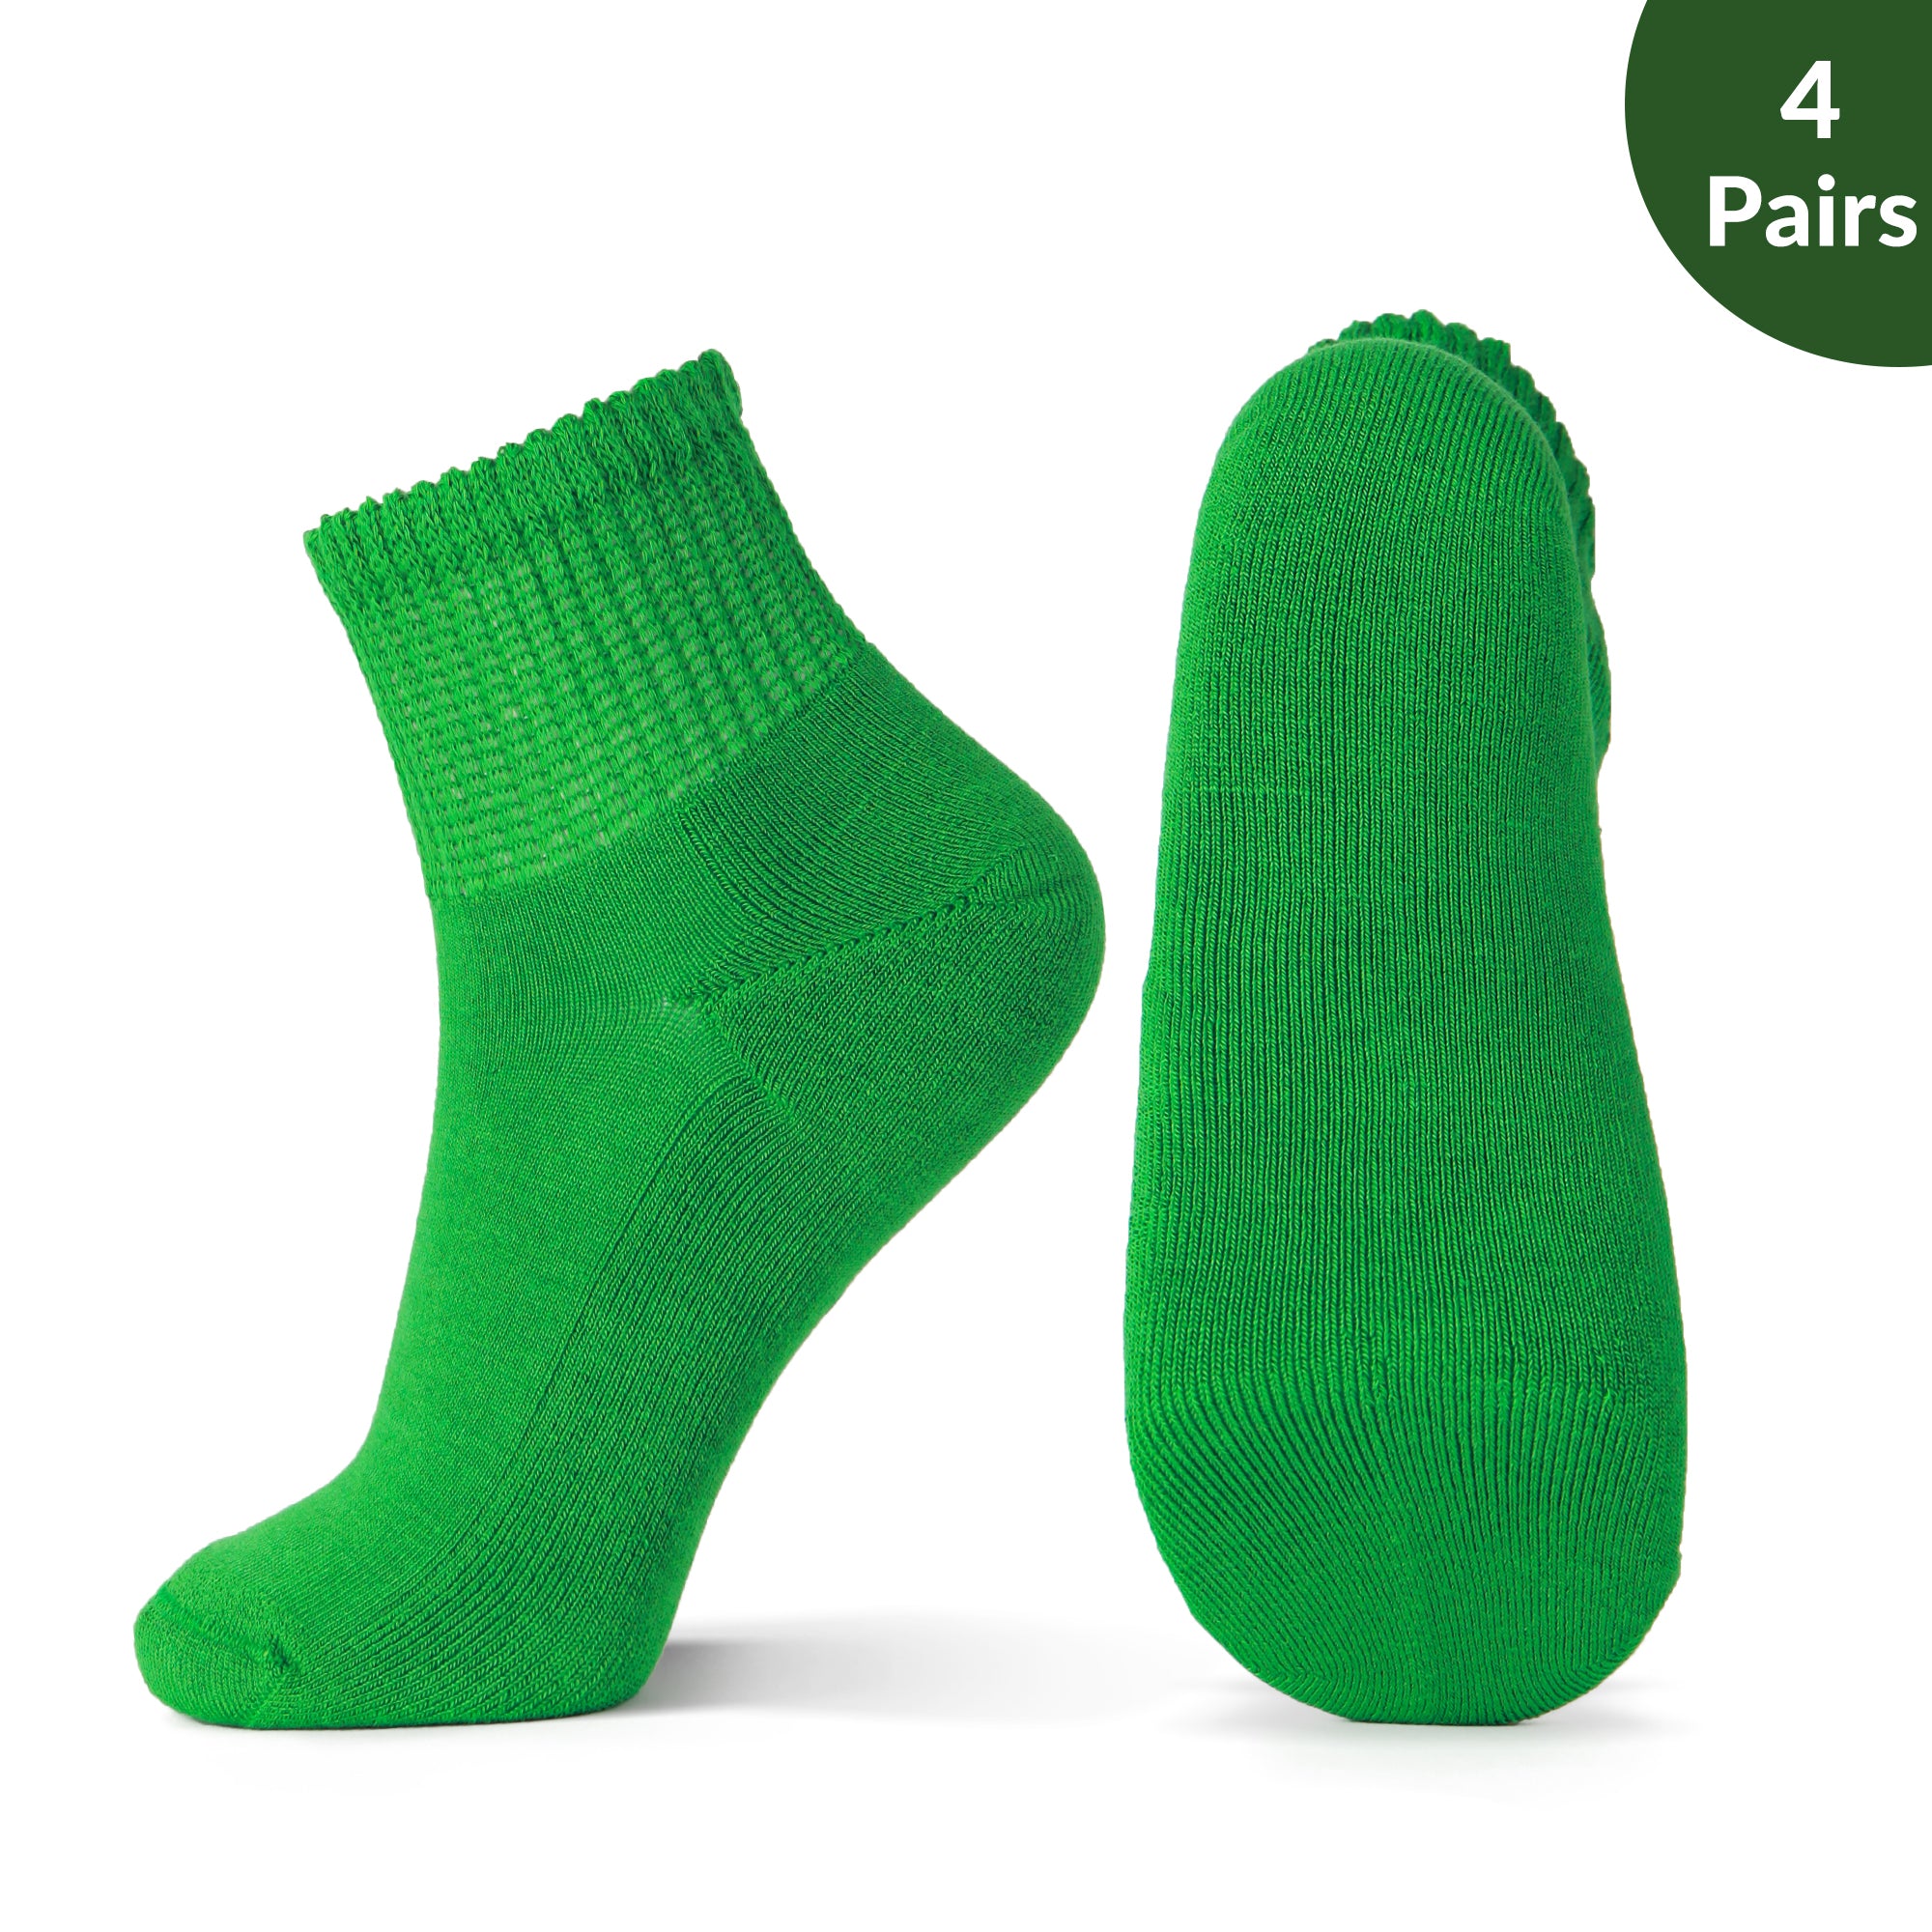 Non-Binding Bamboo Diabetic Socks Morandi Color Series 4Pairs